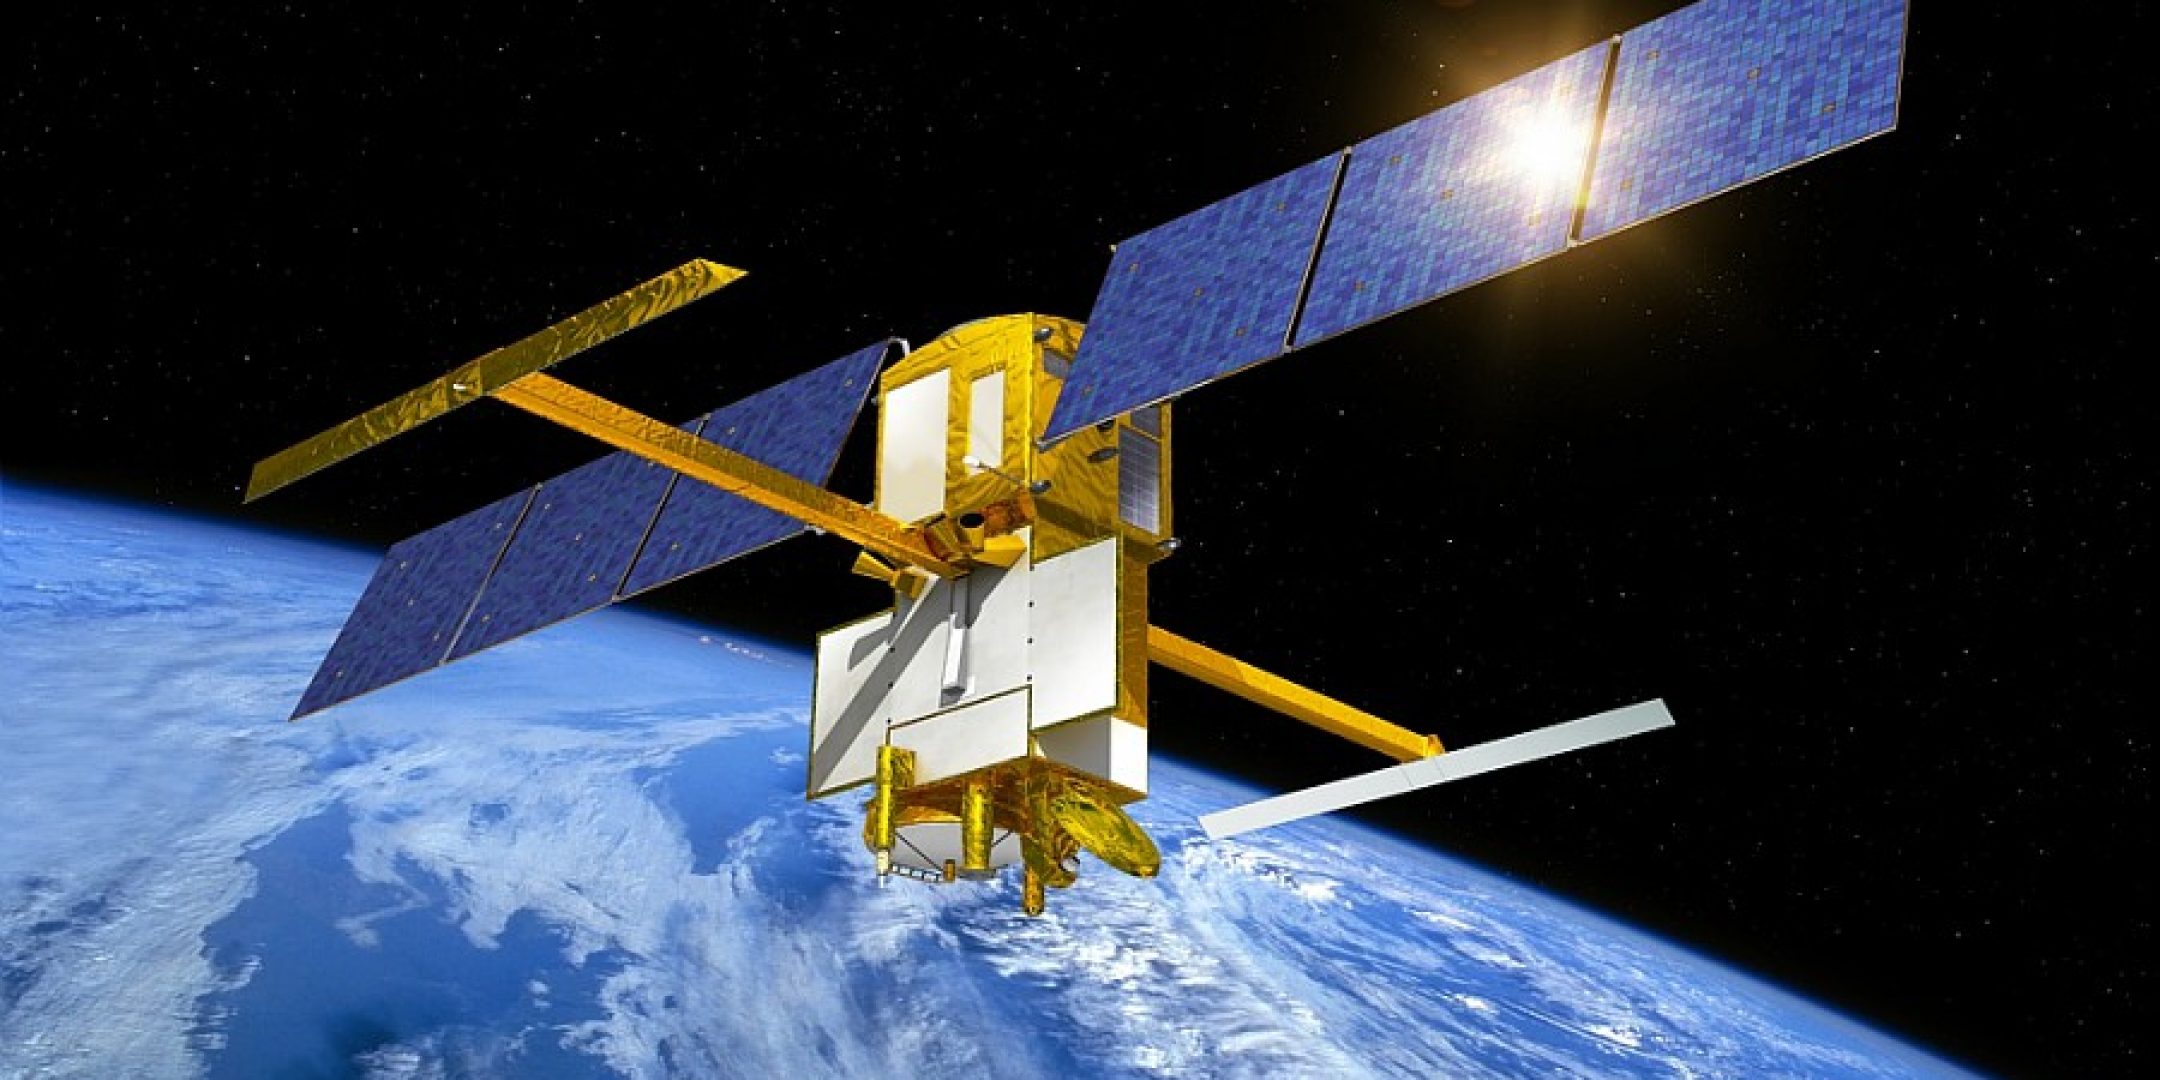 Le satellite SWOT sera doté d'un altimètre capable de surveiller les fleuves et lacs de notre planète